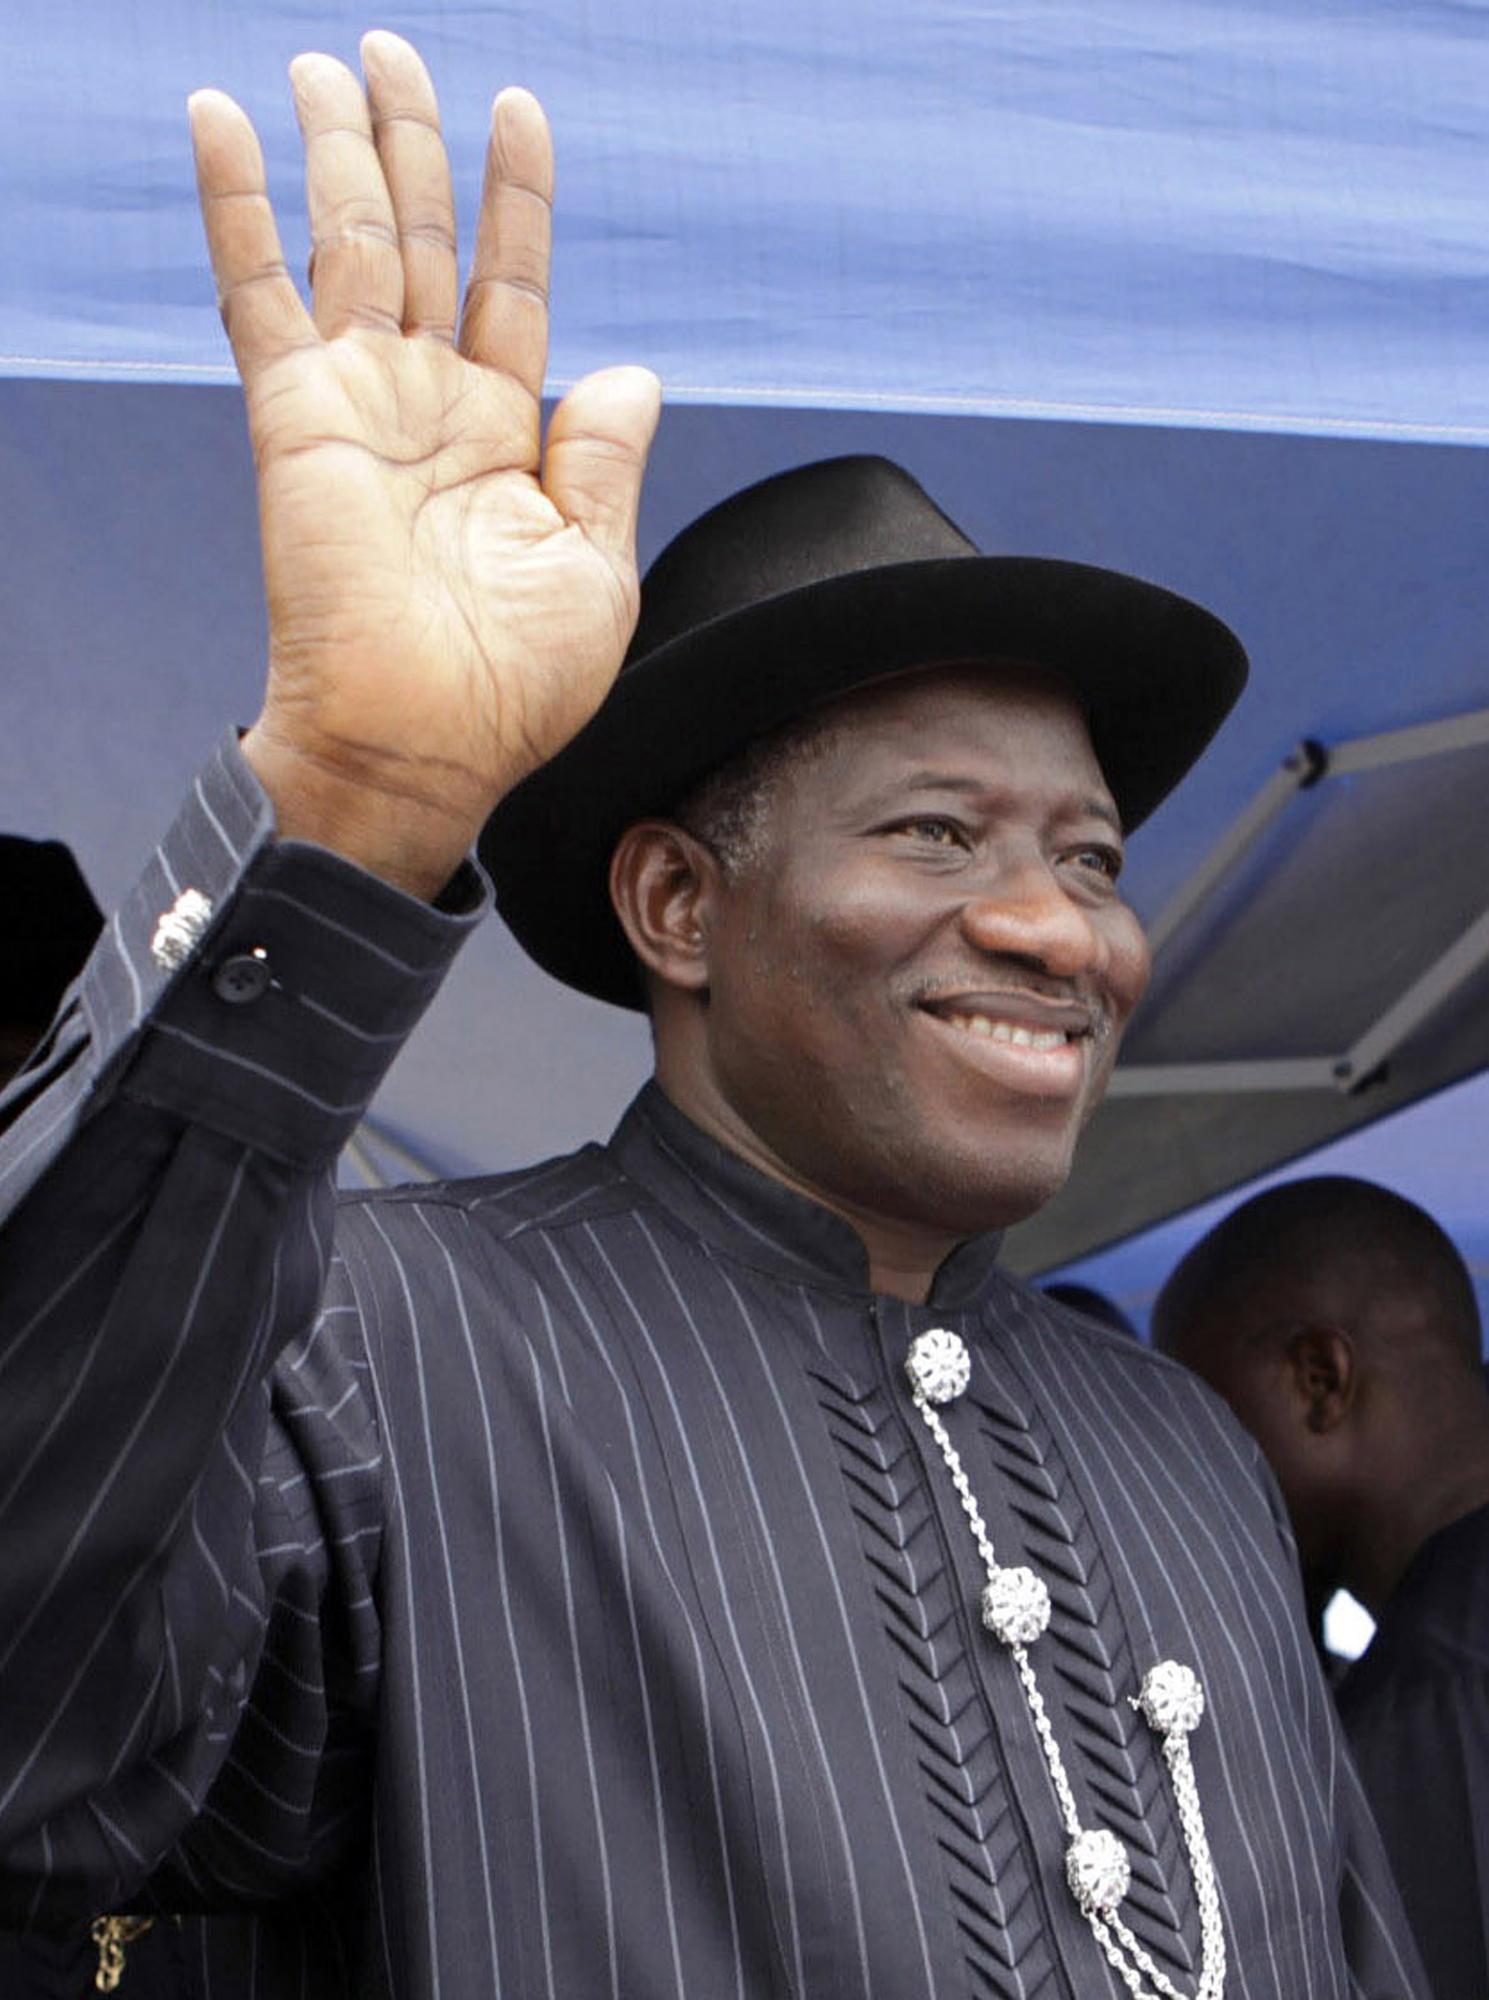 尼日利亚大选后发生骚乱 总统乔纳森呼吁各方冷静